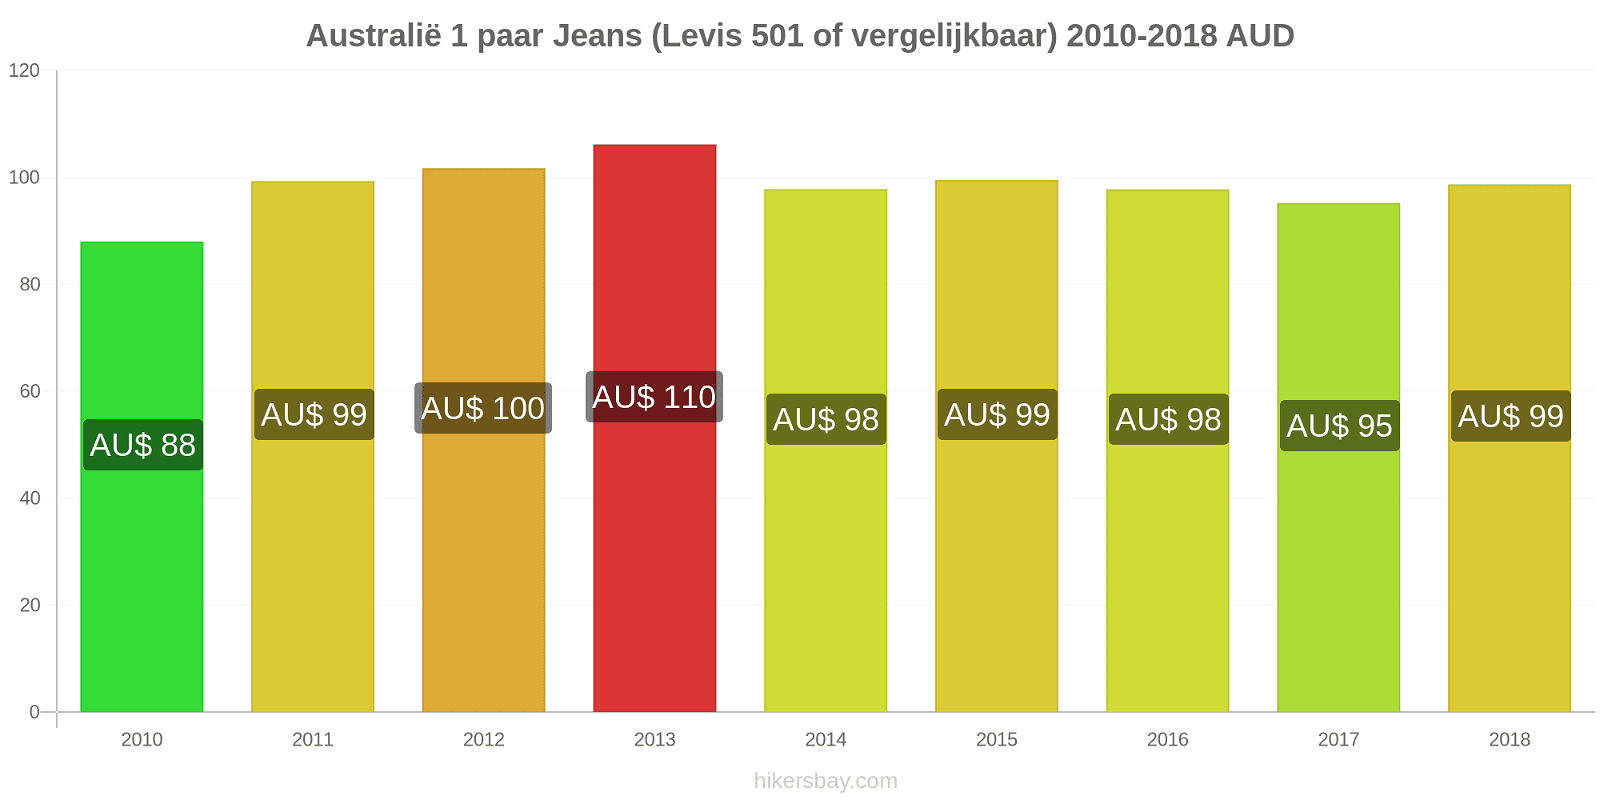 Australië prijswijzigingen 1 Paar spijkerbroeken (Levis 501 of vergelijkbaar) hikersbay.com